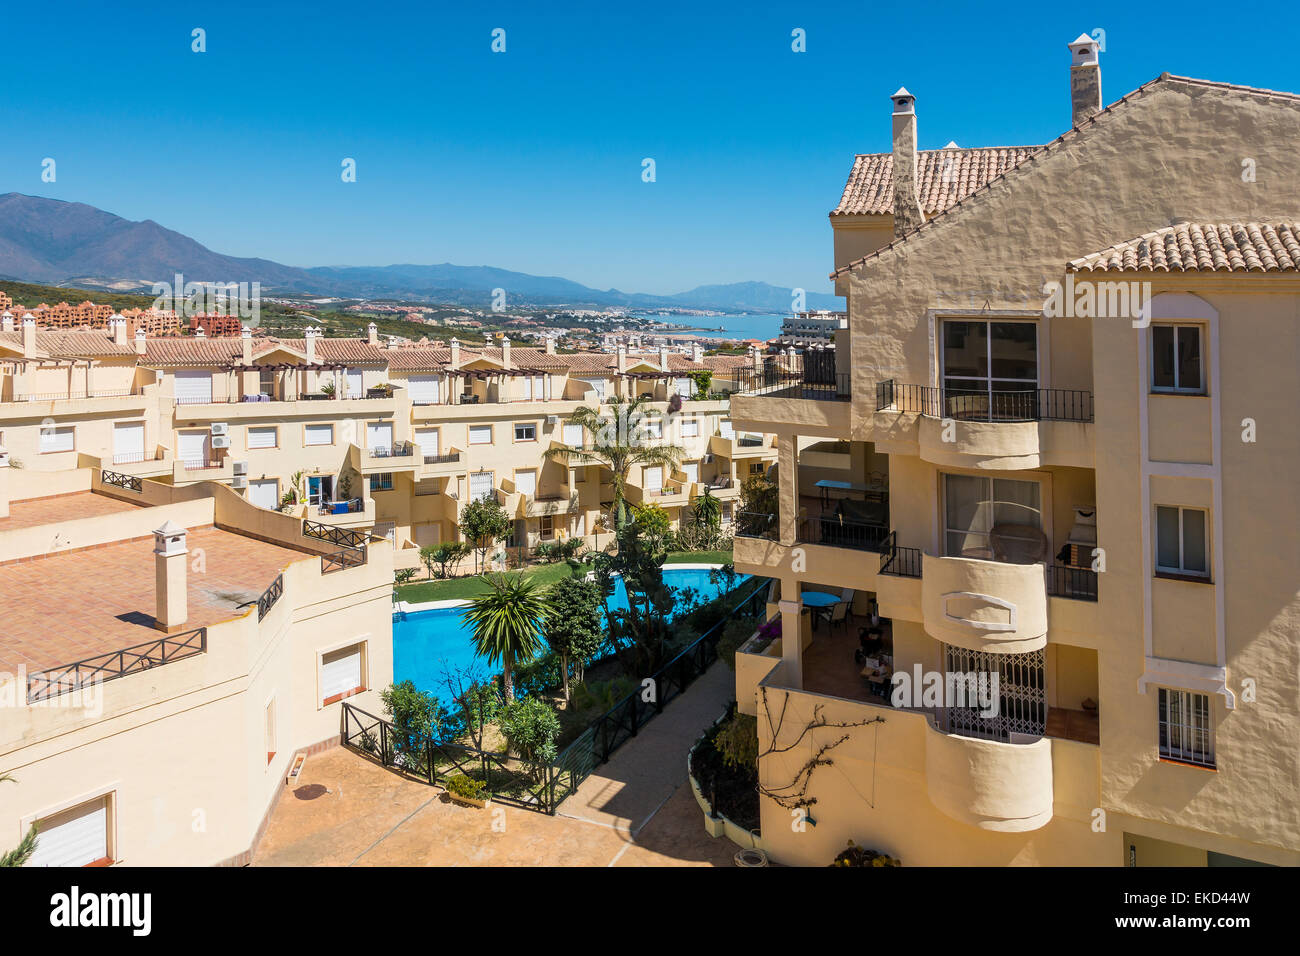 Appartement de vacances Duquesa complexe espagnol Espagne Fairway. Les montagnes de la Sierra Nevada en arrière-plan. Banque D'Images